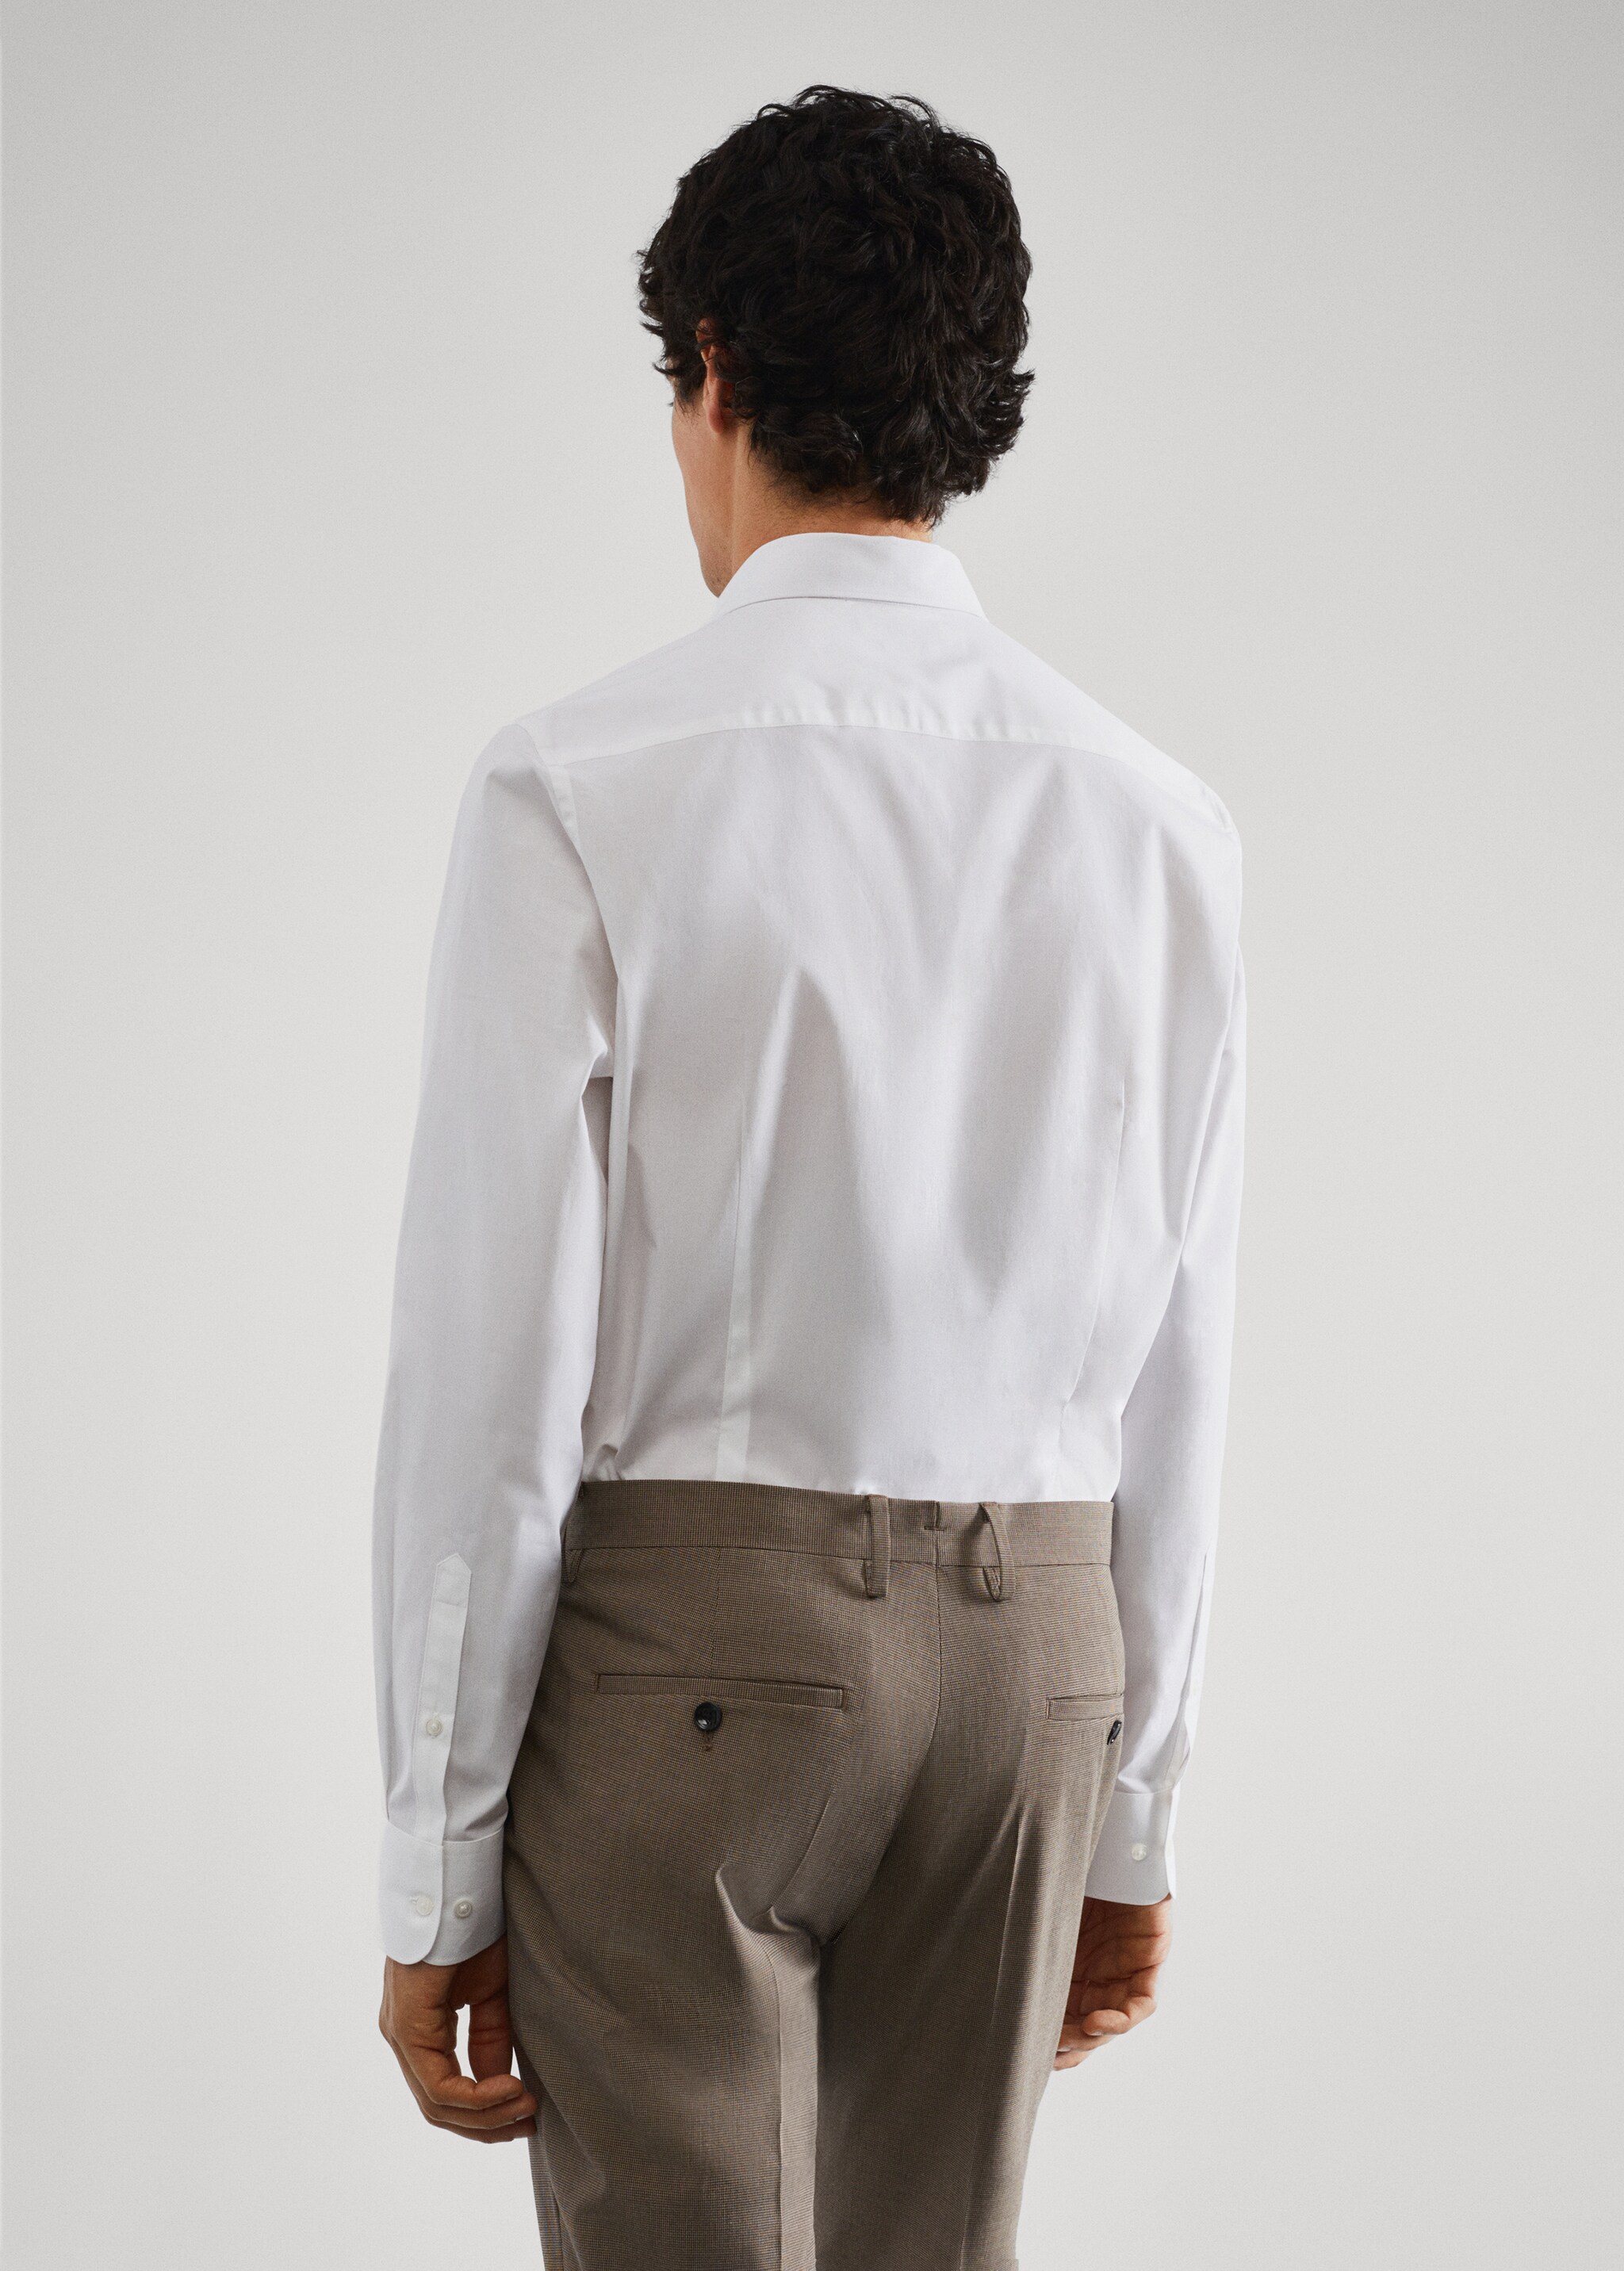 Camisa traje slim fit algodón stretch - Reverso del artículo